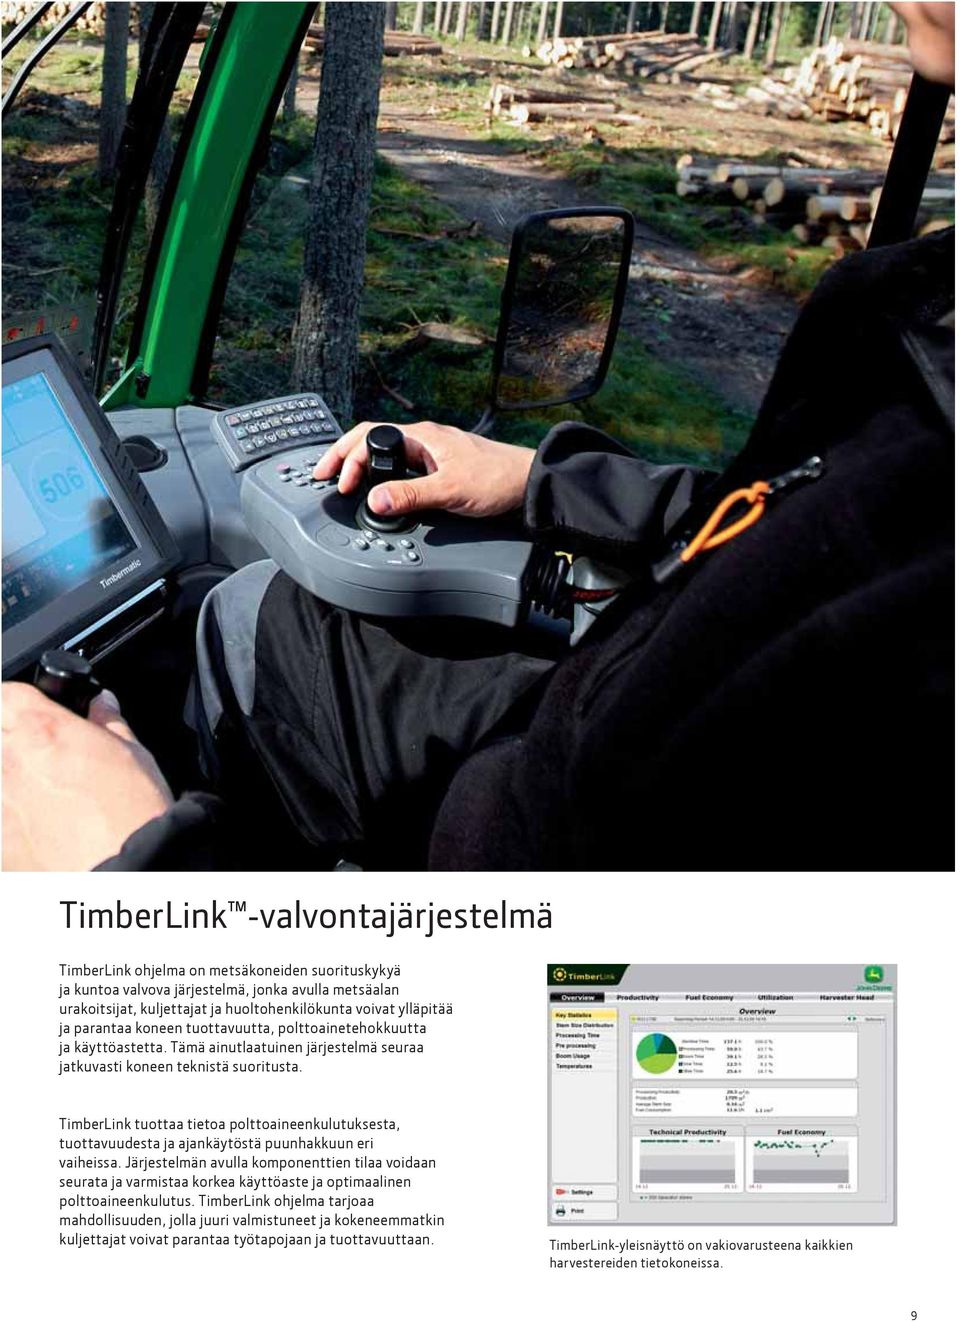 TimberLink tuottaa tietoa polttoaineenkulutuksesta, tuottavuudesta ja ajankäytöstä puunhakkuun eri vaiheissa.